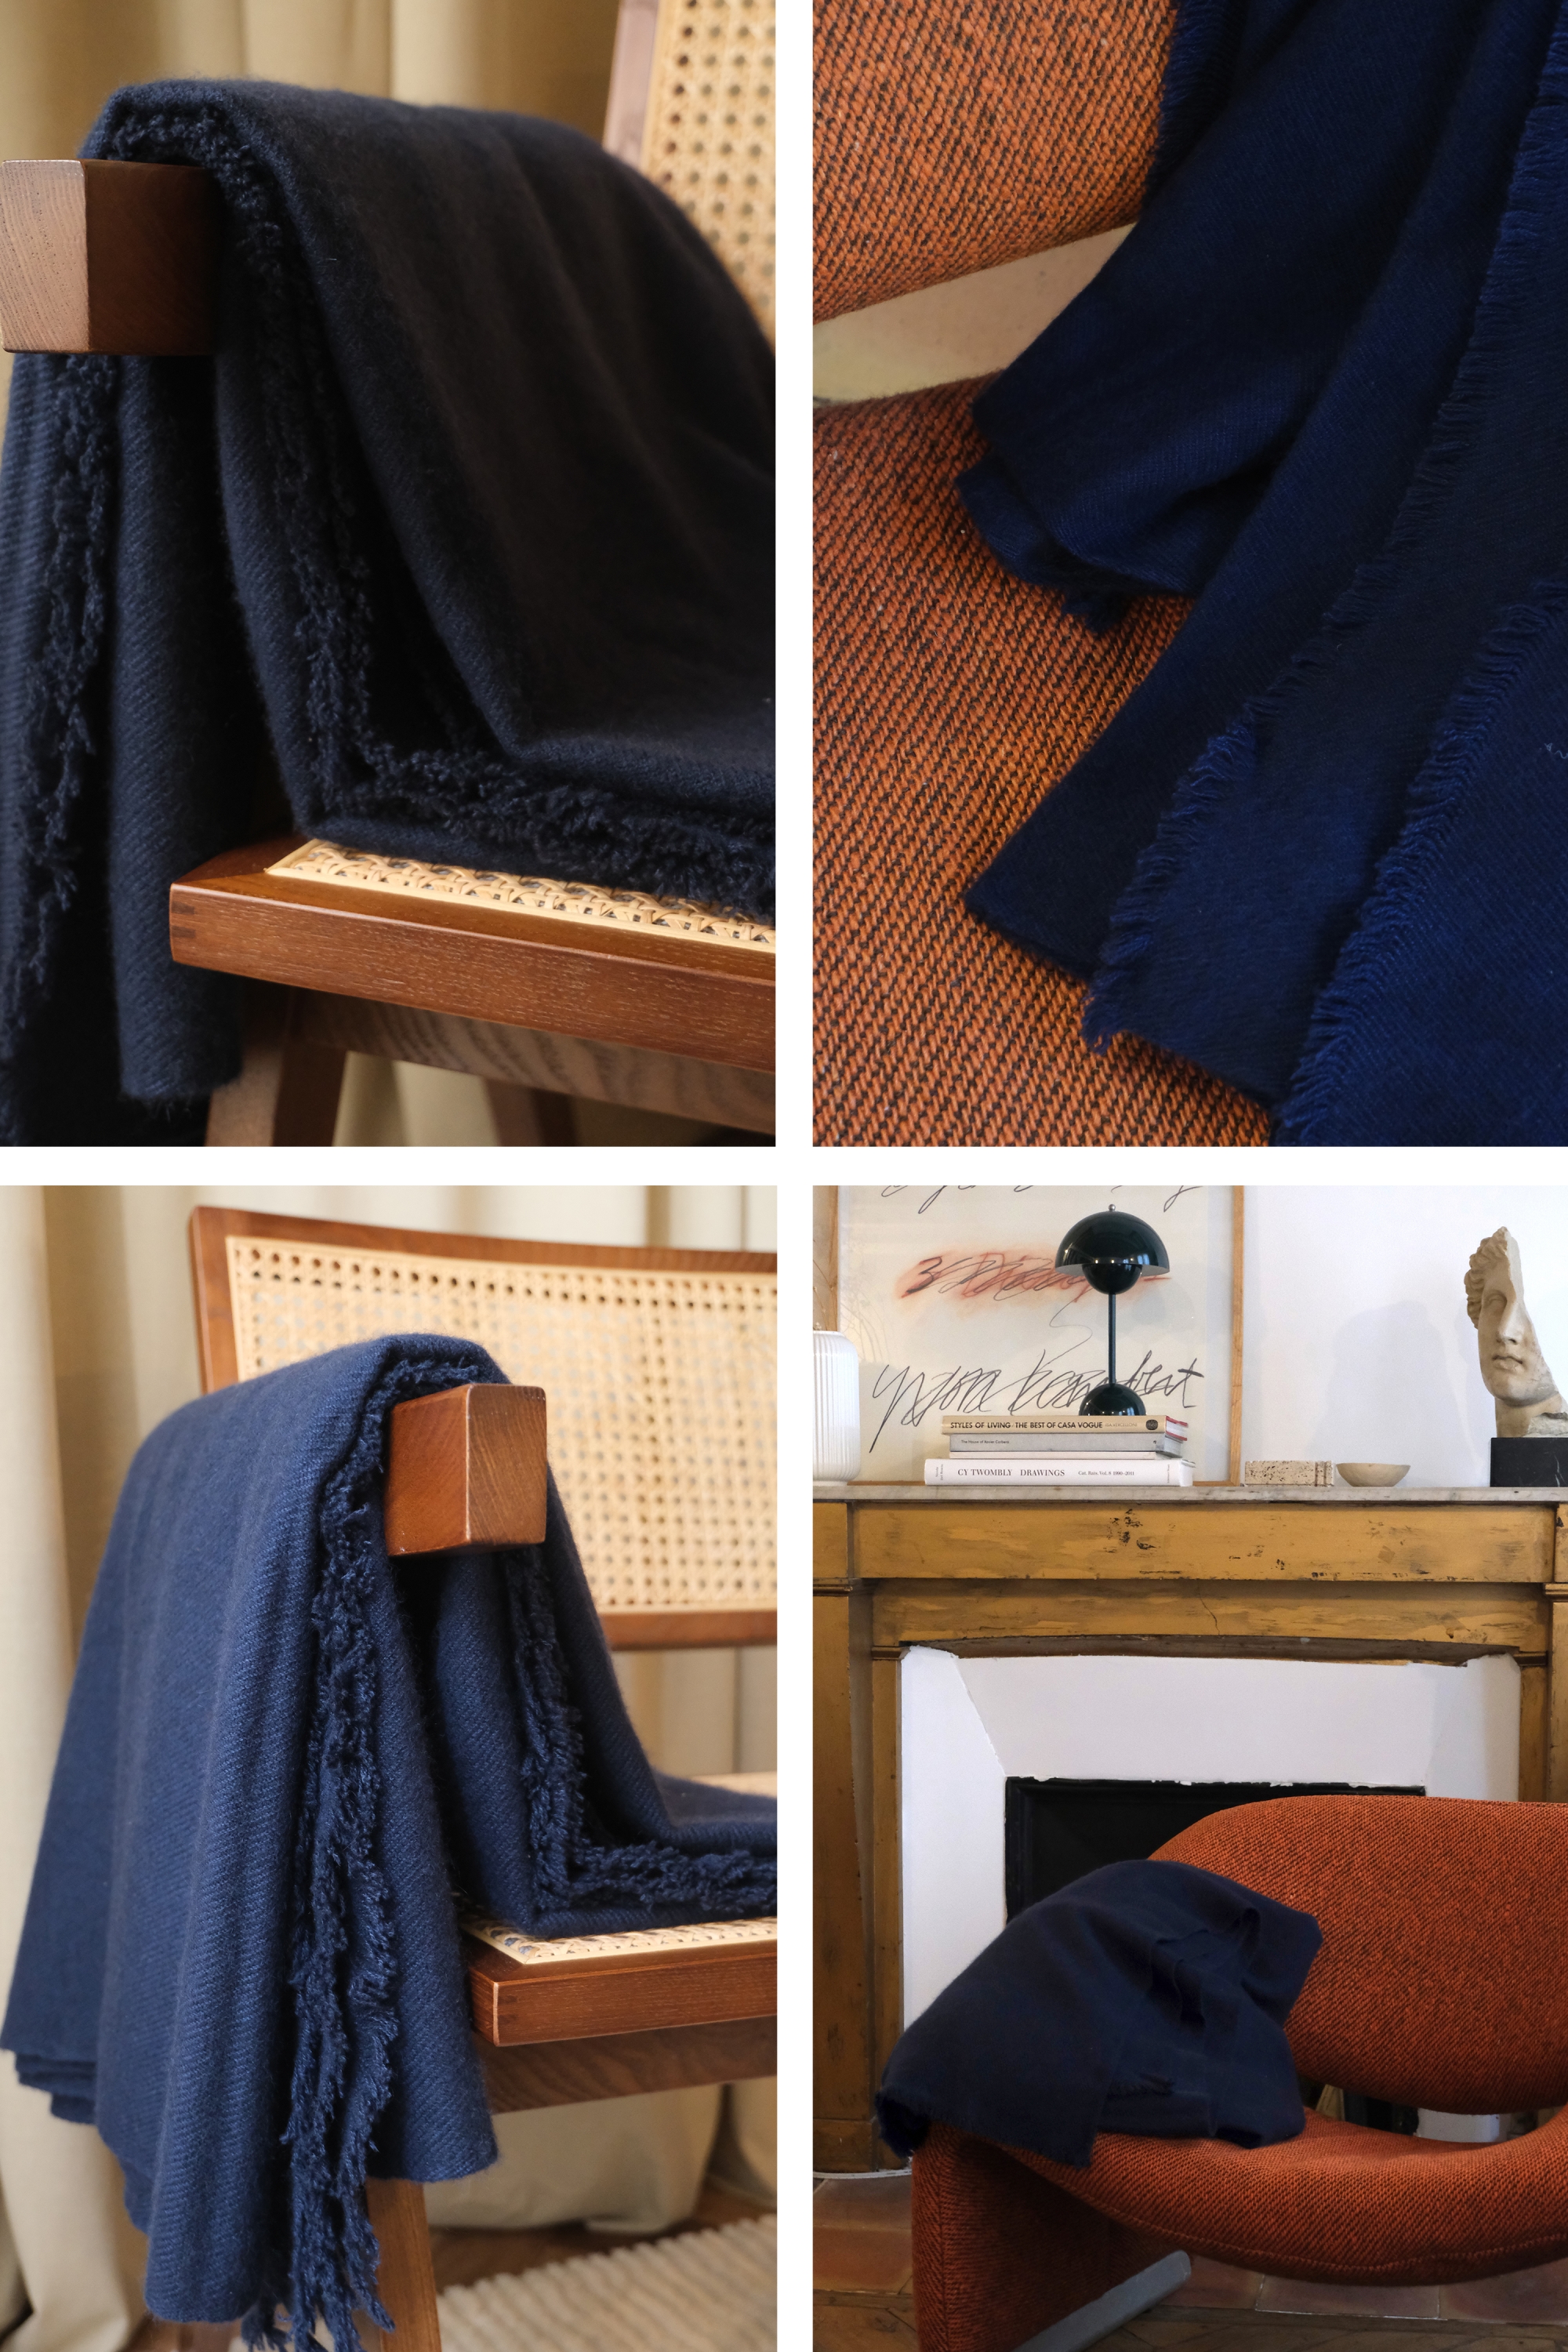 Cachemire accessoires couvertures plaids toodoo plain m 180 x 220 bleu marine 180 x 220 cm